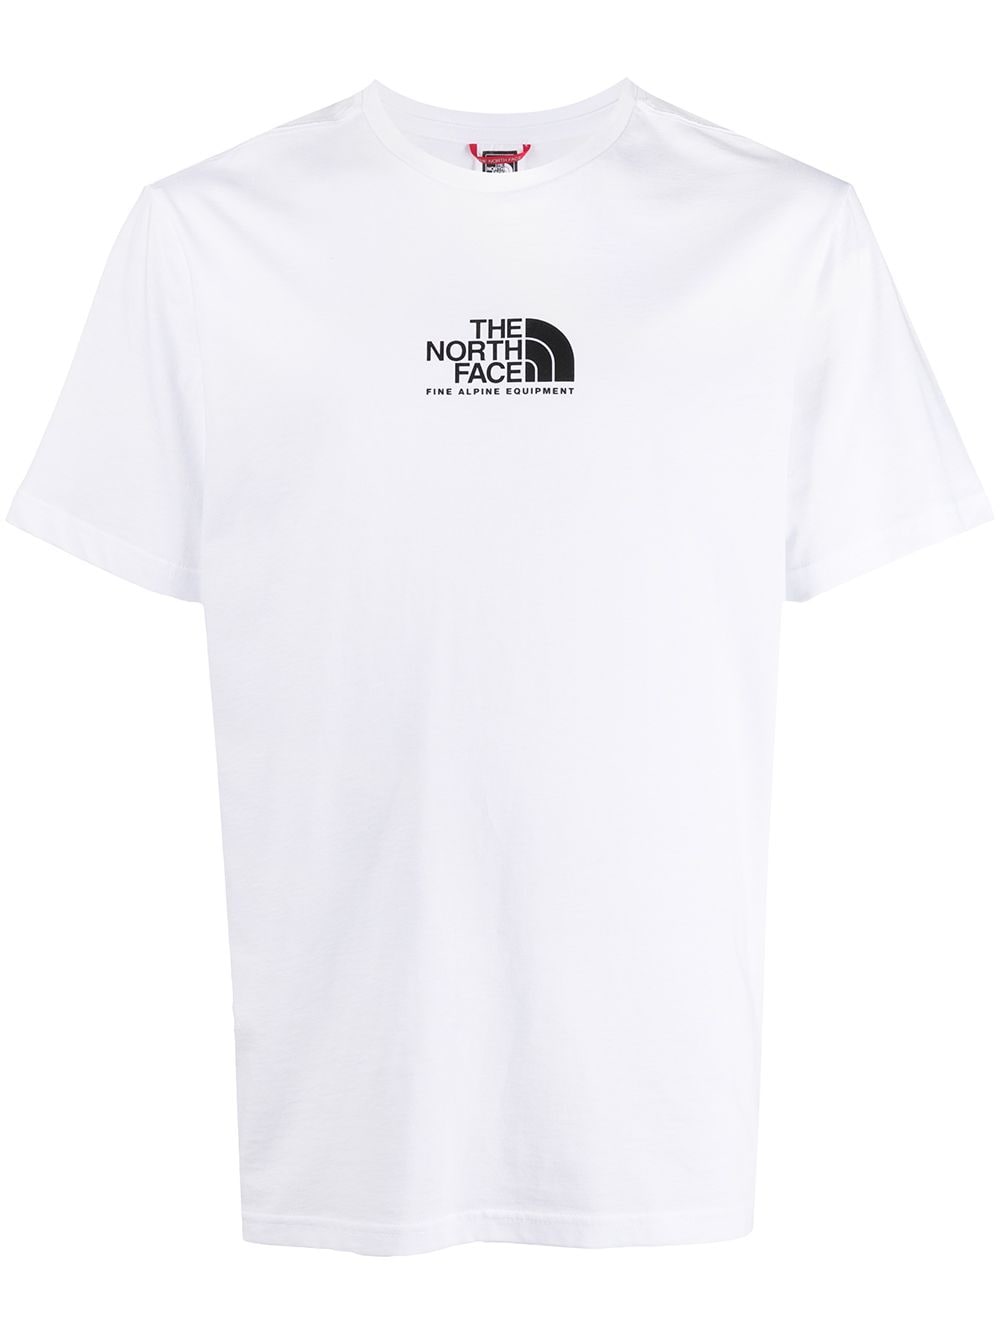 Camiseta Unisex Camisa ADS Algodão THE NORTH FACE Promoção - Corre